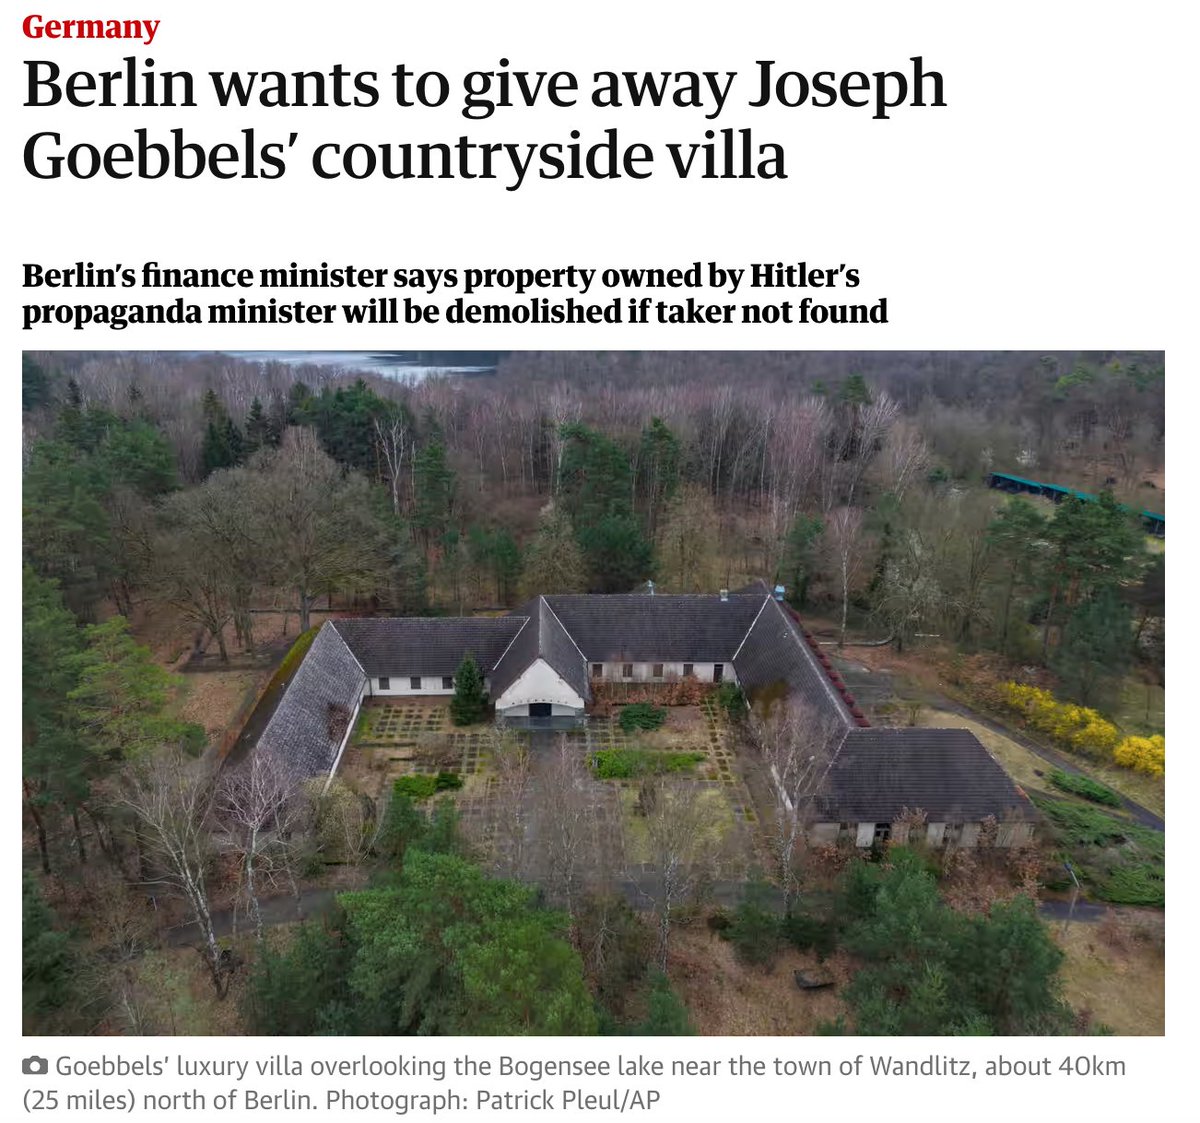 Almanya, Hitler'in propaganda bakanı Göbbels'in evini satışa çıkarmış. Berlin’in 40 km kuzeyindeki ev yıllardır satılamıyordu. Alan olmazsa yıkılacakmış. Rende Başkanlığı talip olur belki.